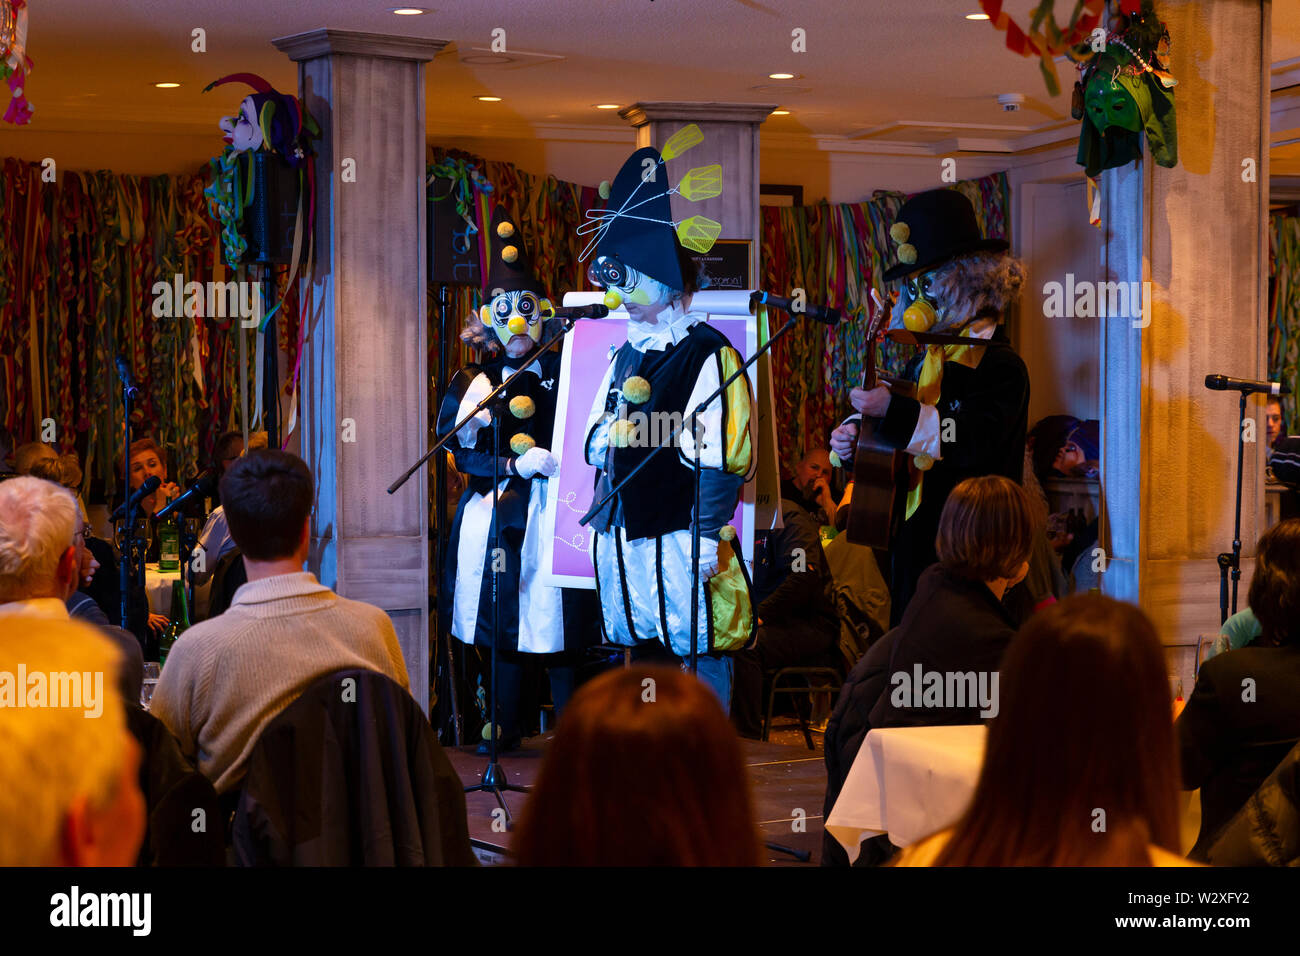 Bâle, Suisse - Mars 11th, 2019. Le Schnitzelbaenggler Carnaval groupe appelé Drey Daags Fliege effectuant leur parodie de la poésie dans un restaurant Banque D'Images